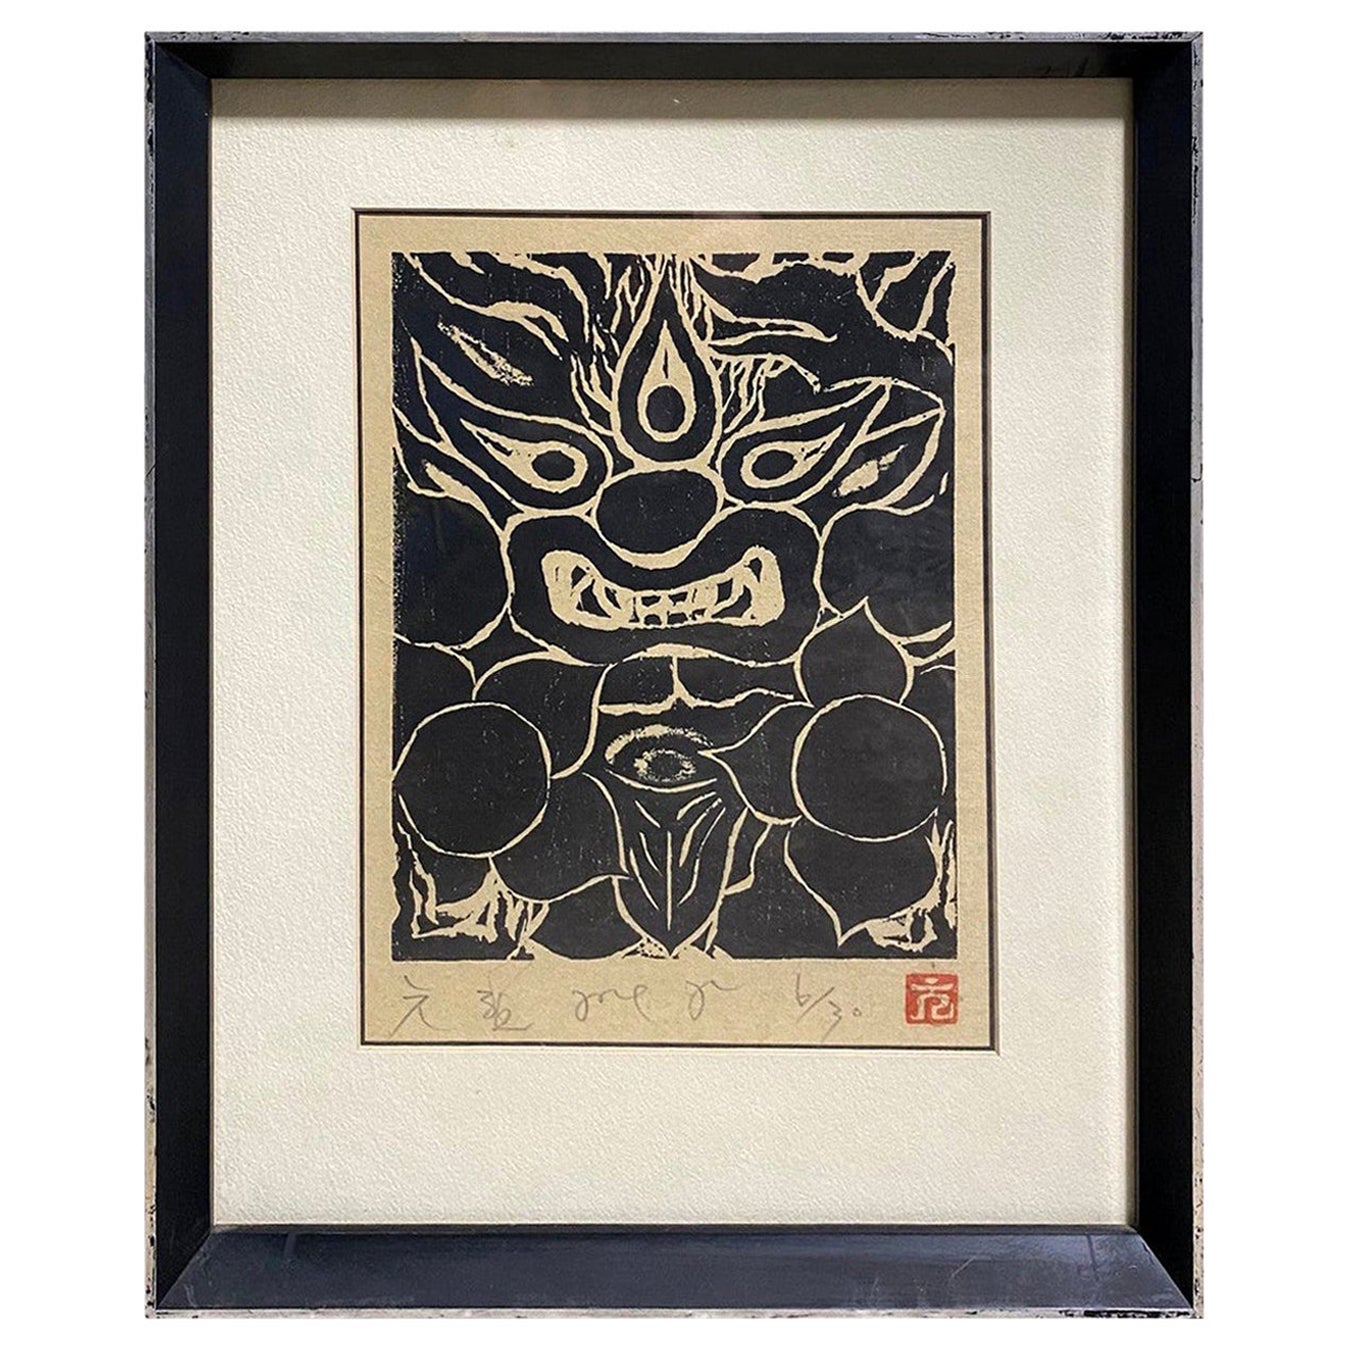 Japanese Signed Limited Edition Black White Woodblock Print Mythological Demon